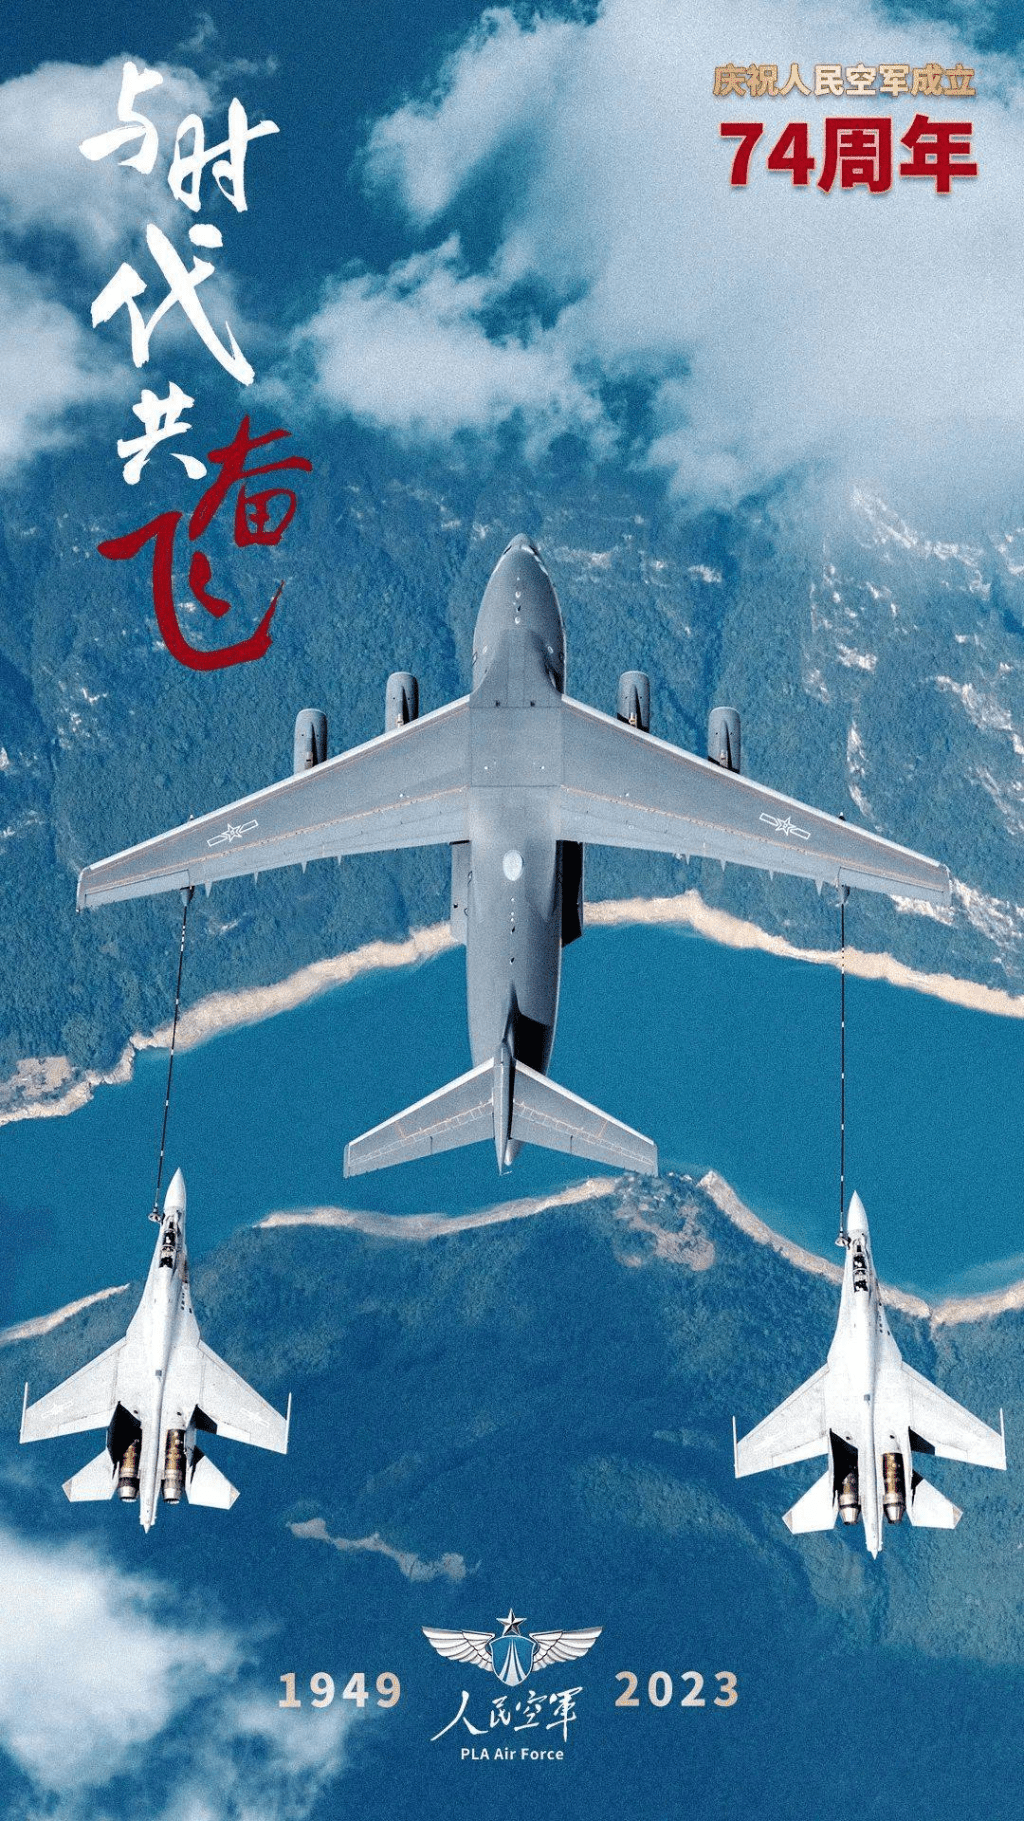 人民空军成立74周年，发放多款空军宣传照片。